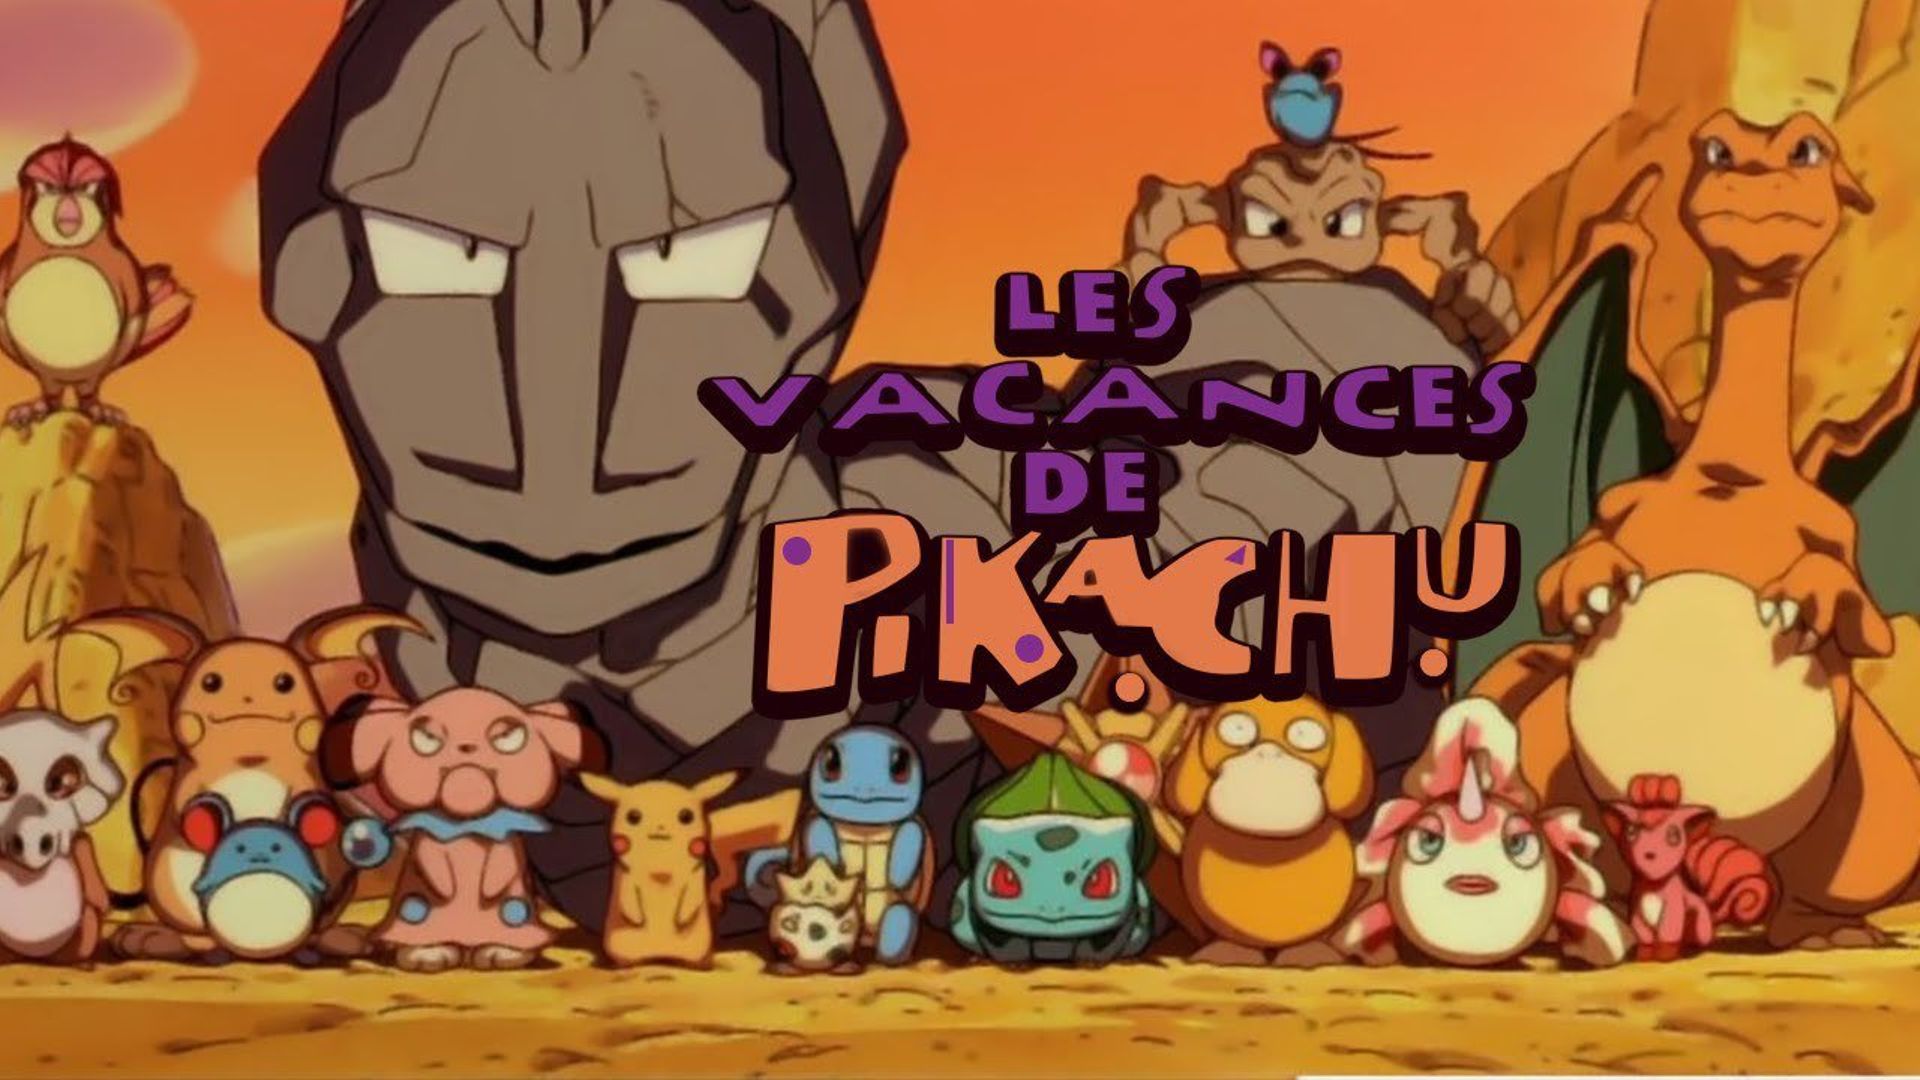 Pikachu's Vacation Backdrop